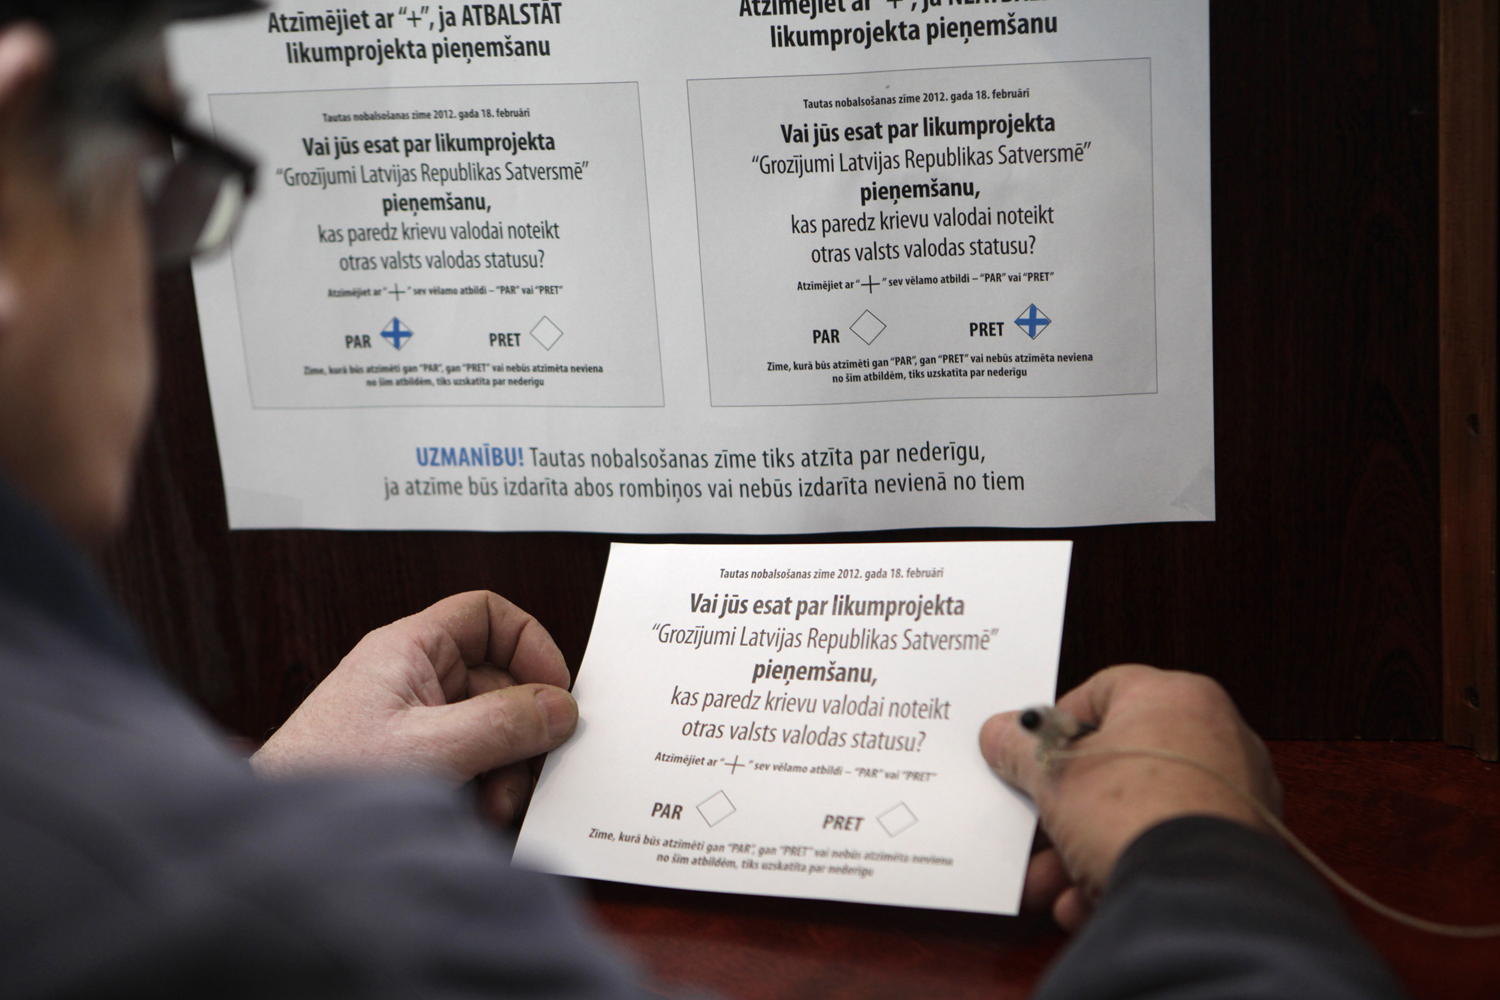 Szavazólap egy lettországi polgár kezében - a jövőben is egy nyelven lesz csak rajta a kérdés